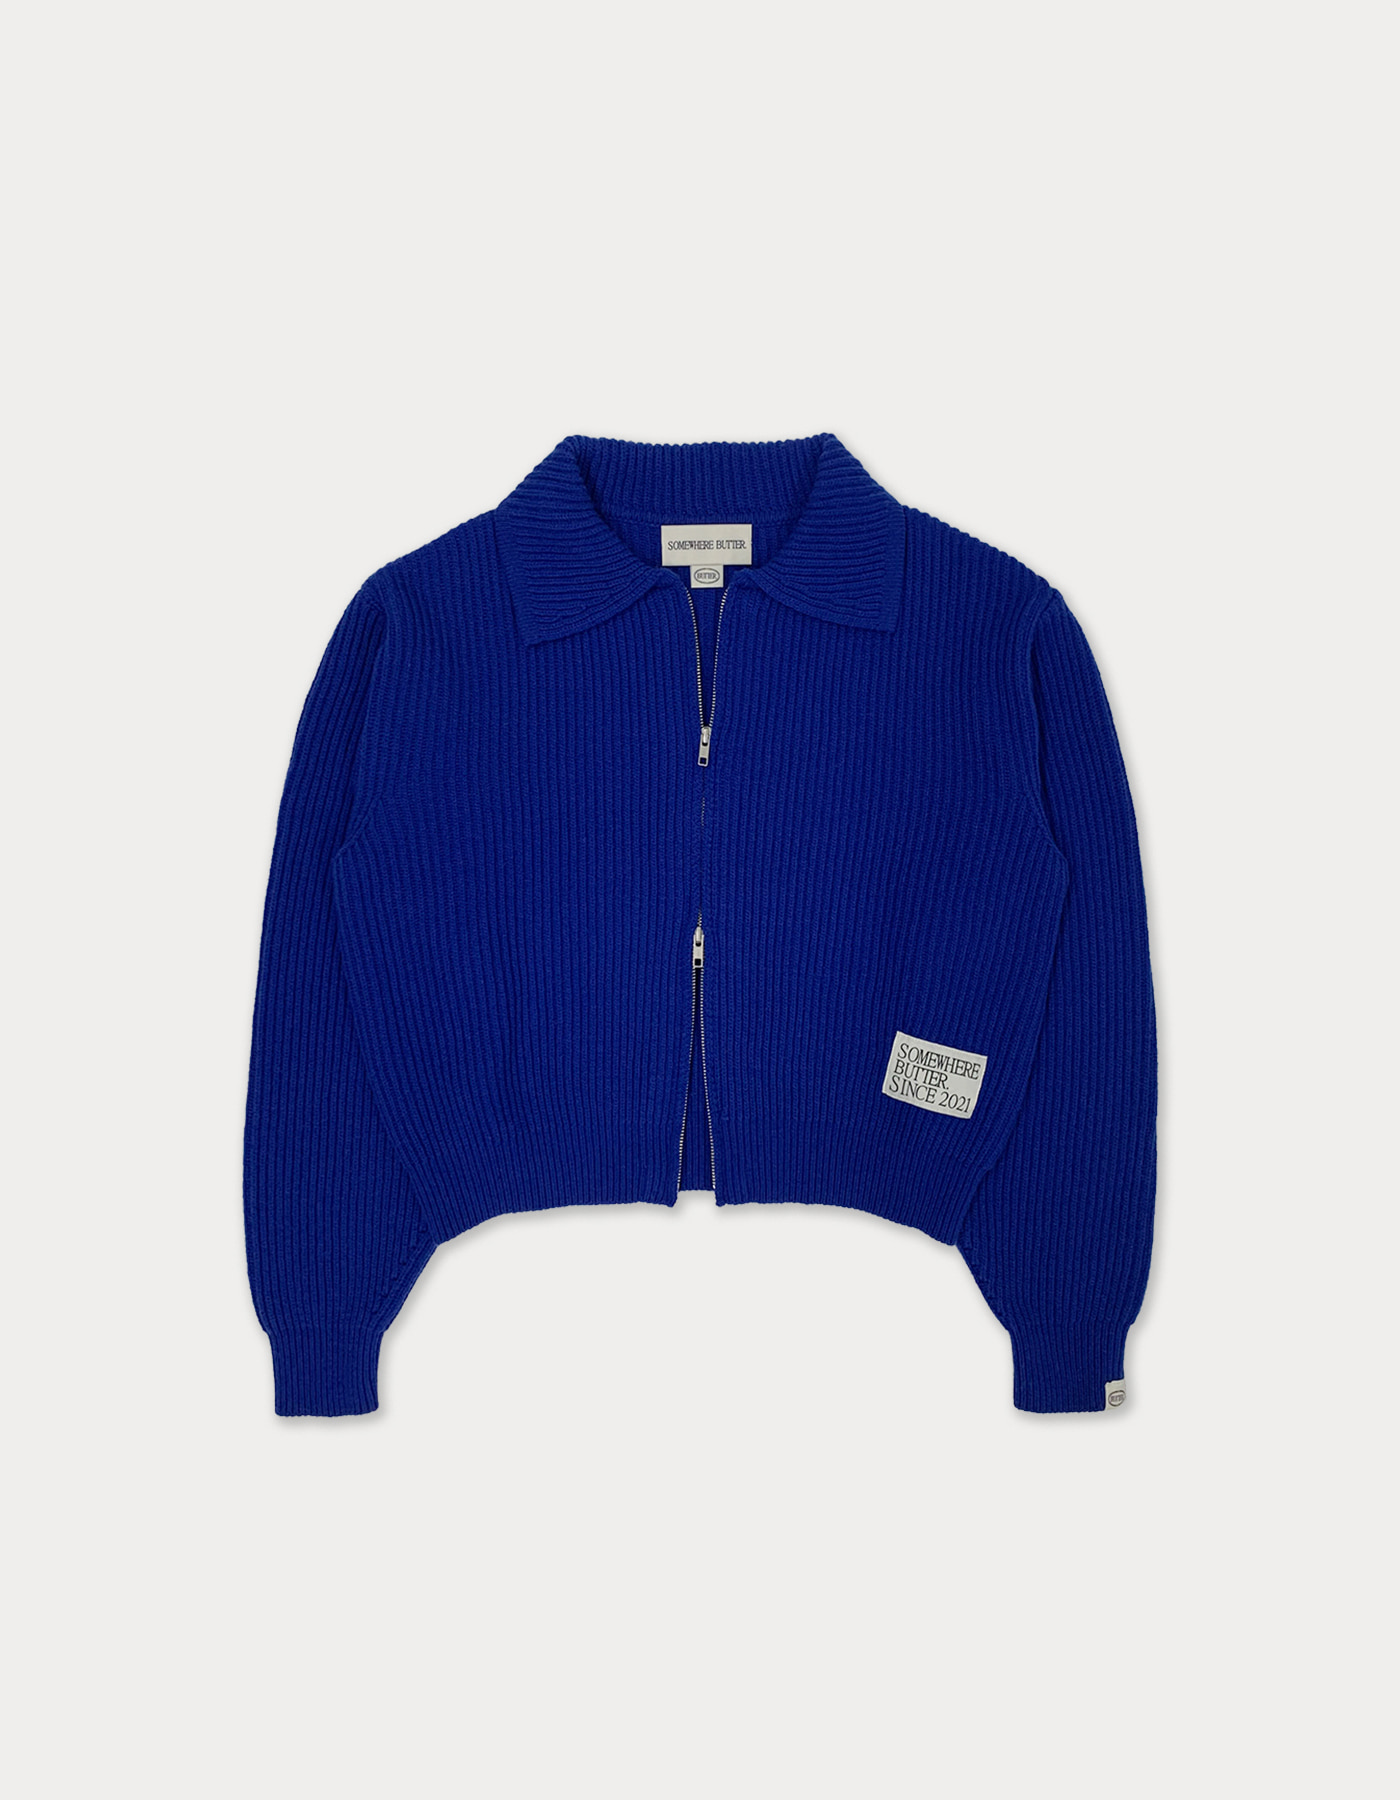 rev wool 2way zip-up - cobalt blue